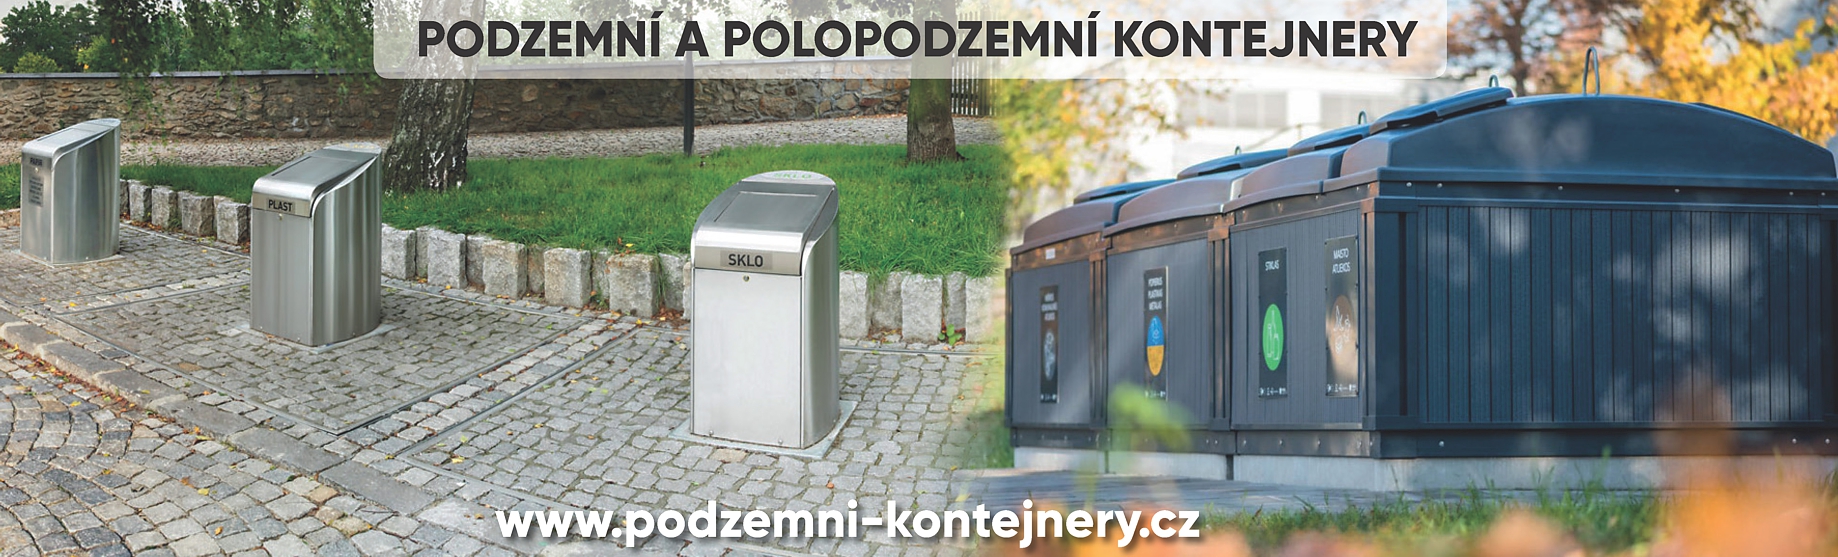 Web www.podzemni-kontejnery.cz